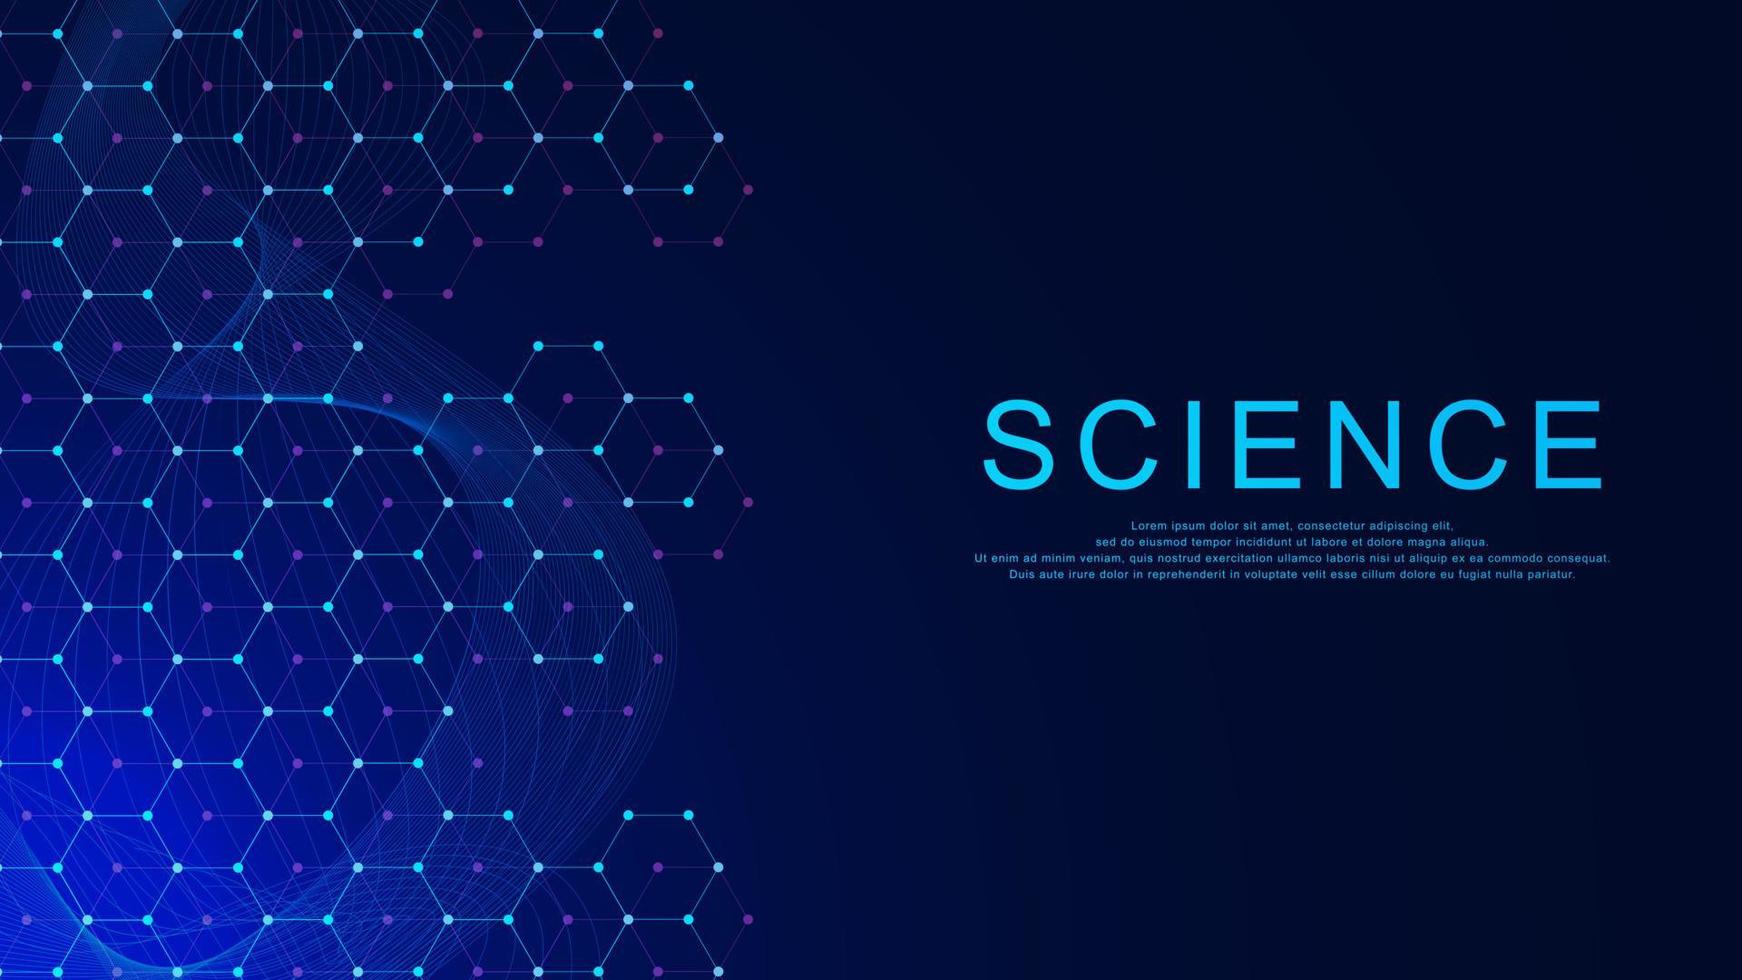 Wissenschaft oder molekular Struktur Hintergrund. Medizin, Chemie, Technologie, wissenschaftlich Design Konzept. Vektor Illustration.